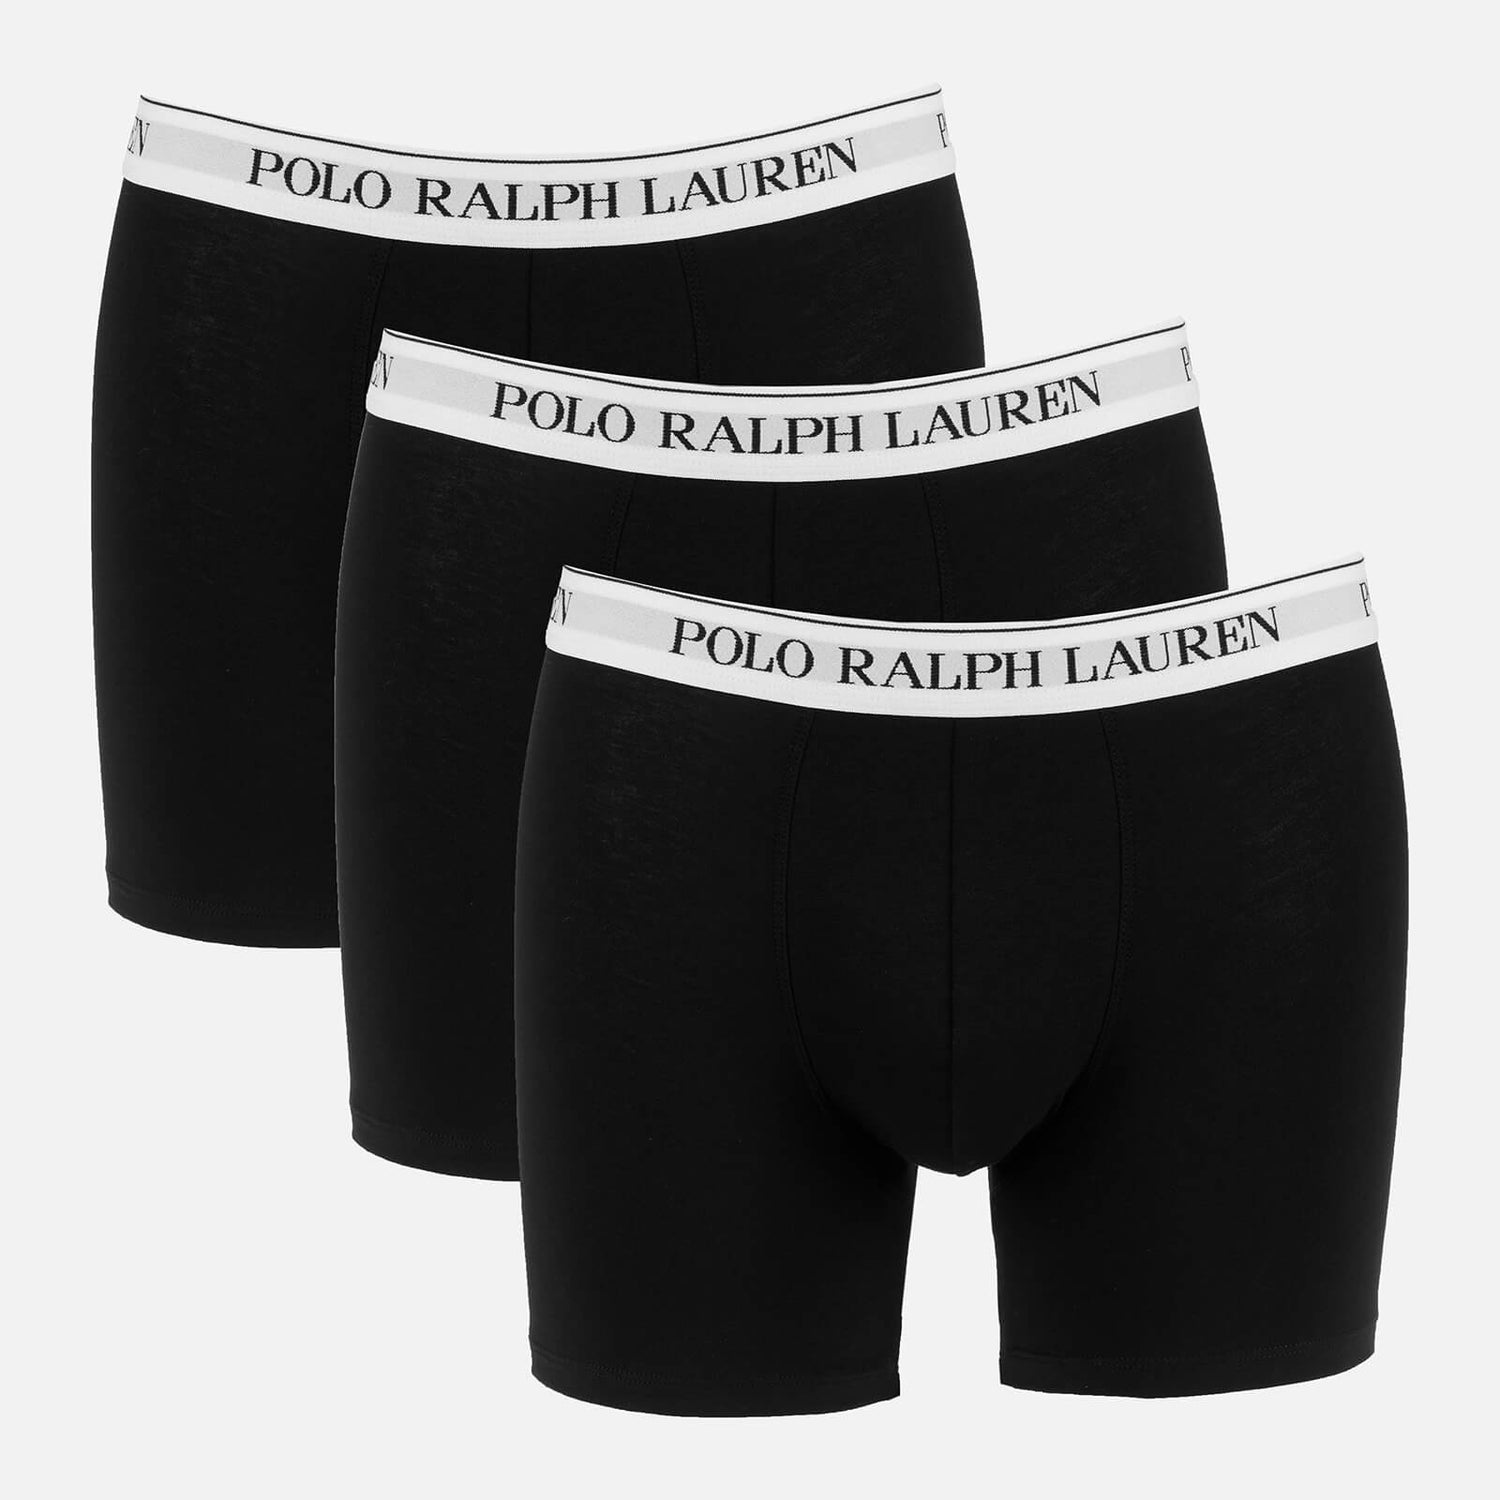 Polo Ralph Lauren Men's 3-Pack Boxer Briefs - Black